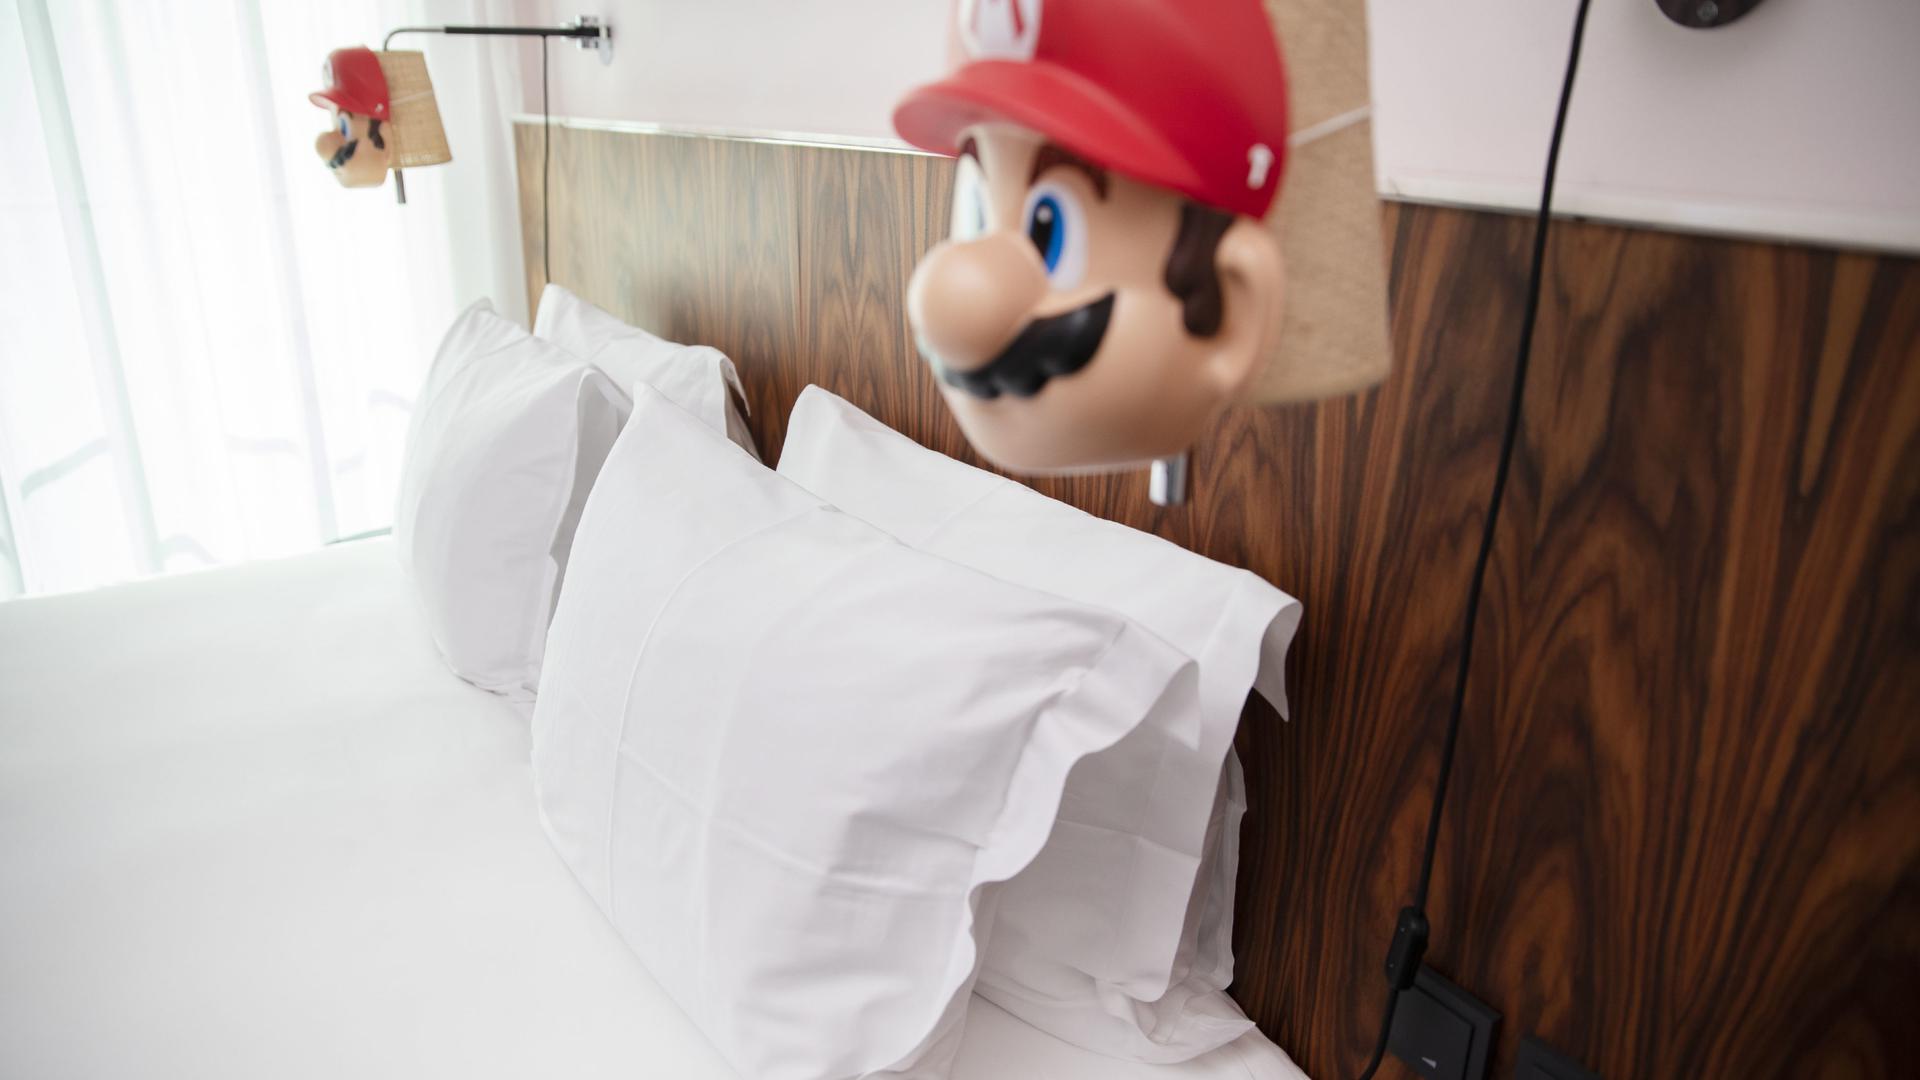 Surtout : ne jamais sortir sans son masque. N'est-ce pas Mario?